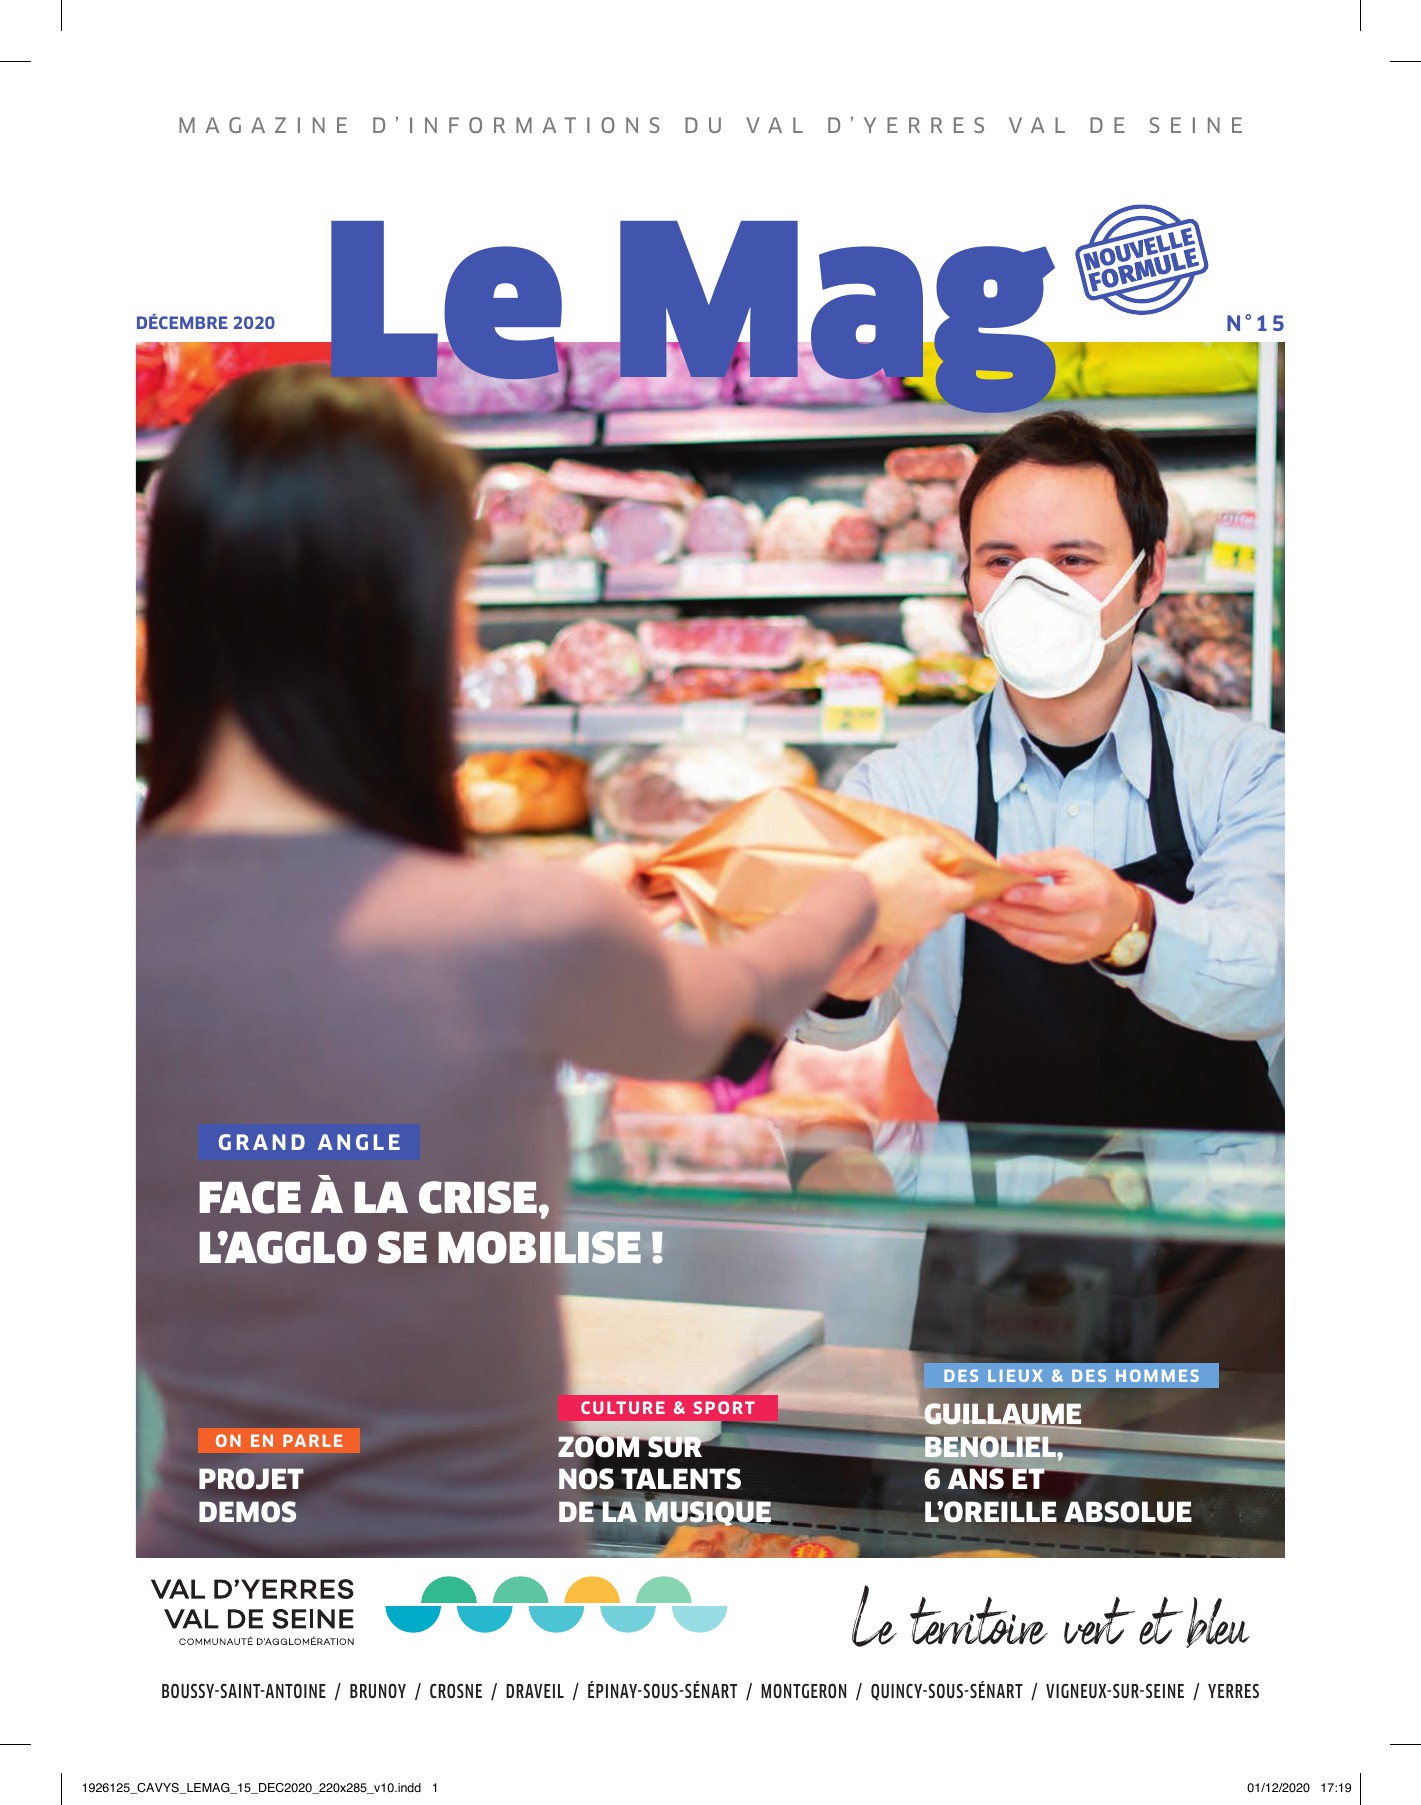 Magazine du Val d’Yerres Val de Seine décembre 2020